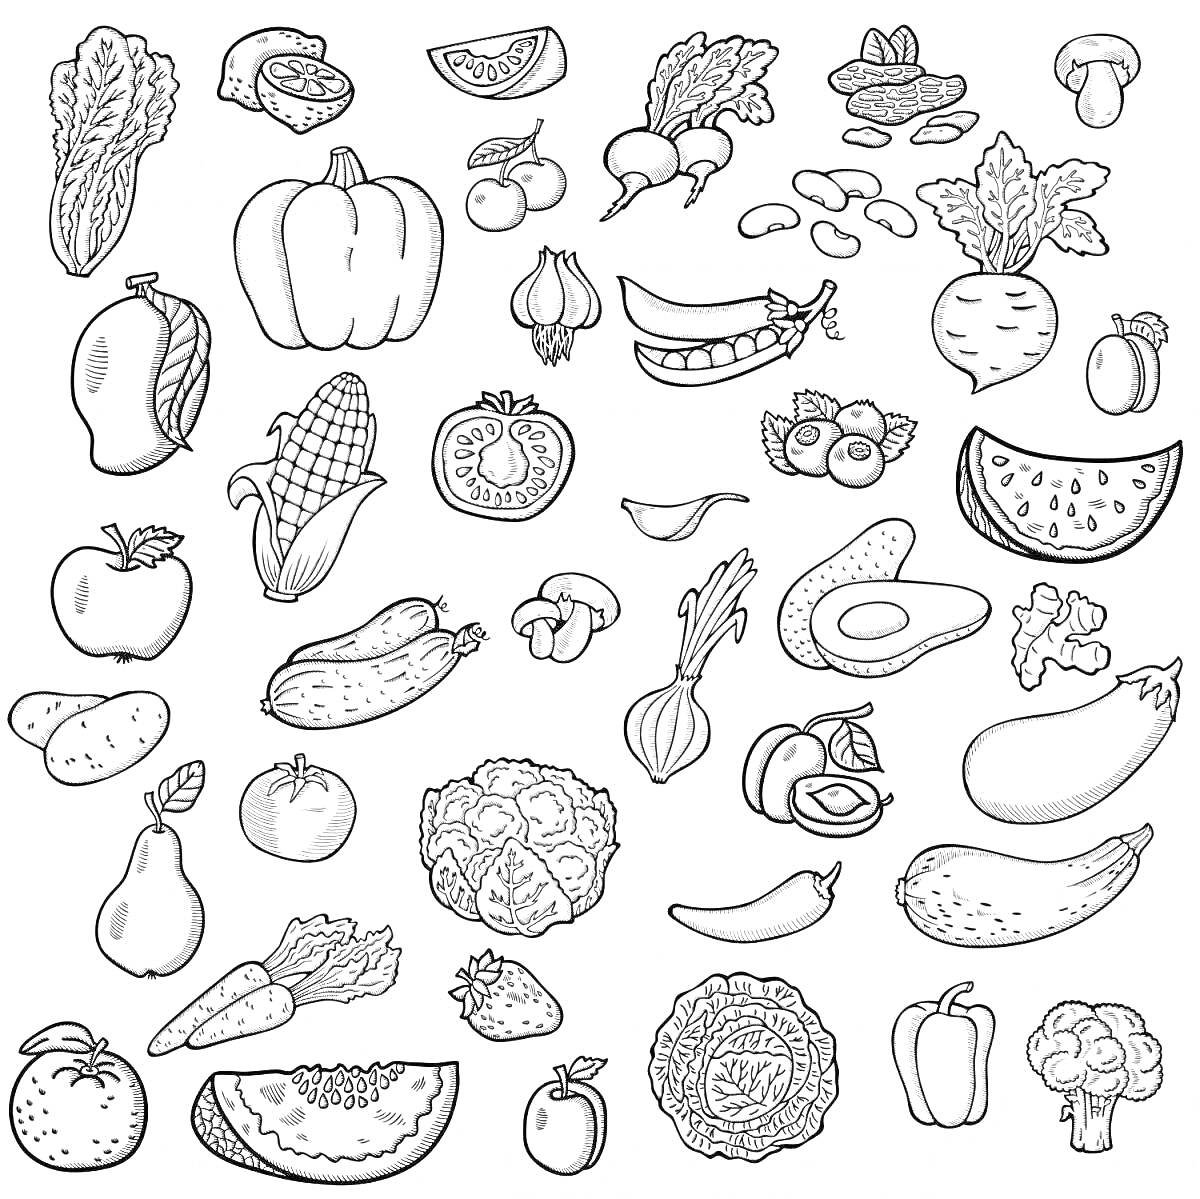 Раскраска Раскраска - Овощи и фрукты, богатые витаминами